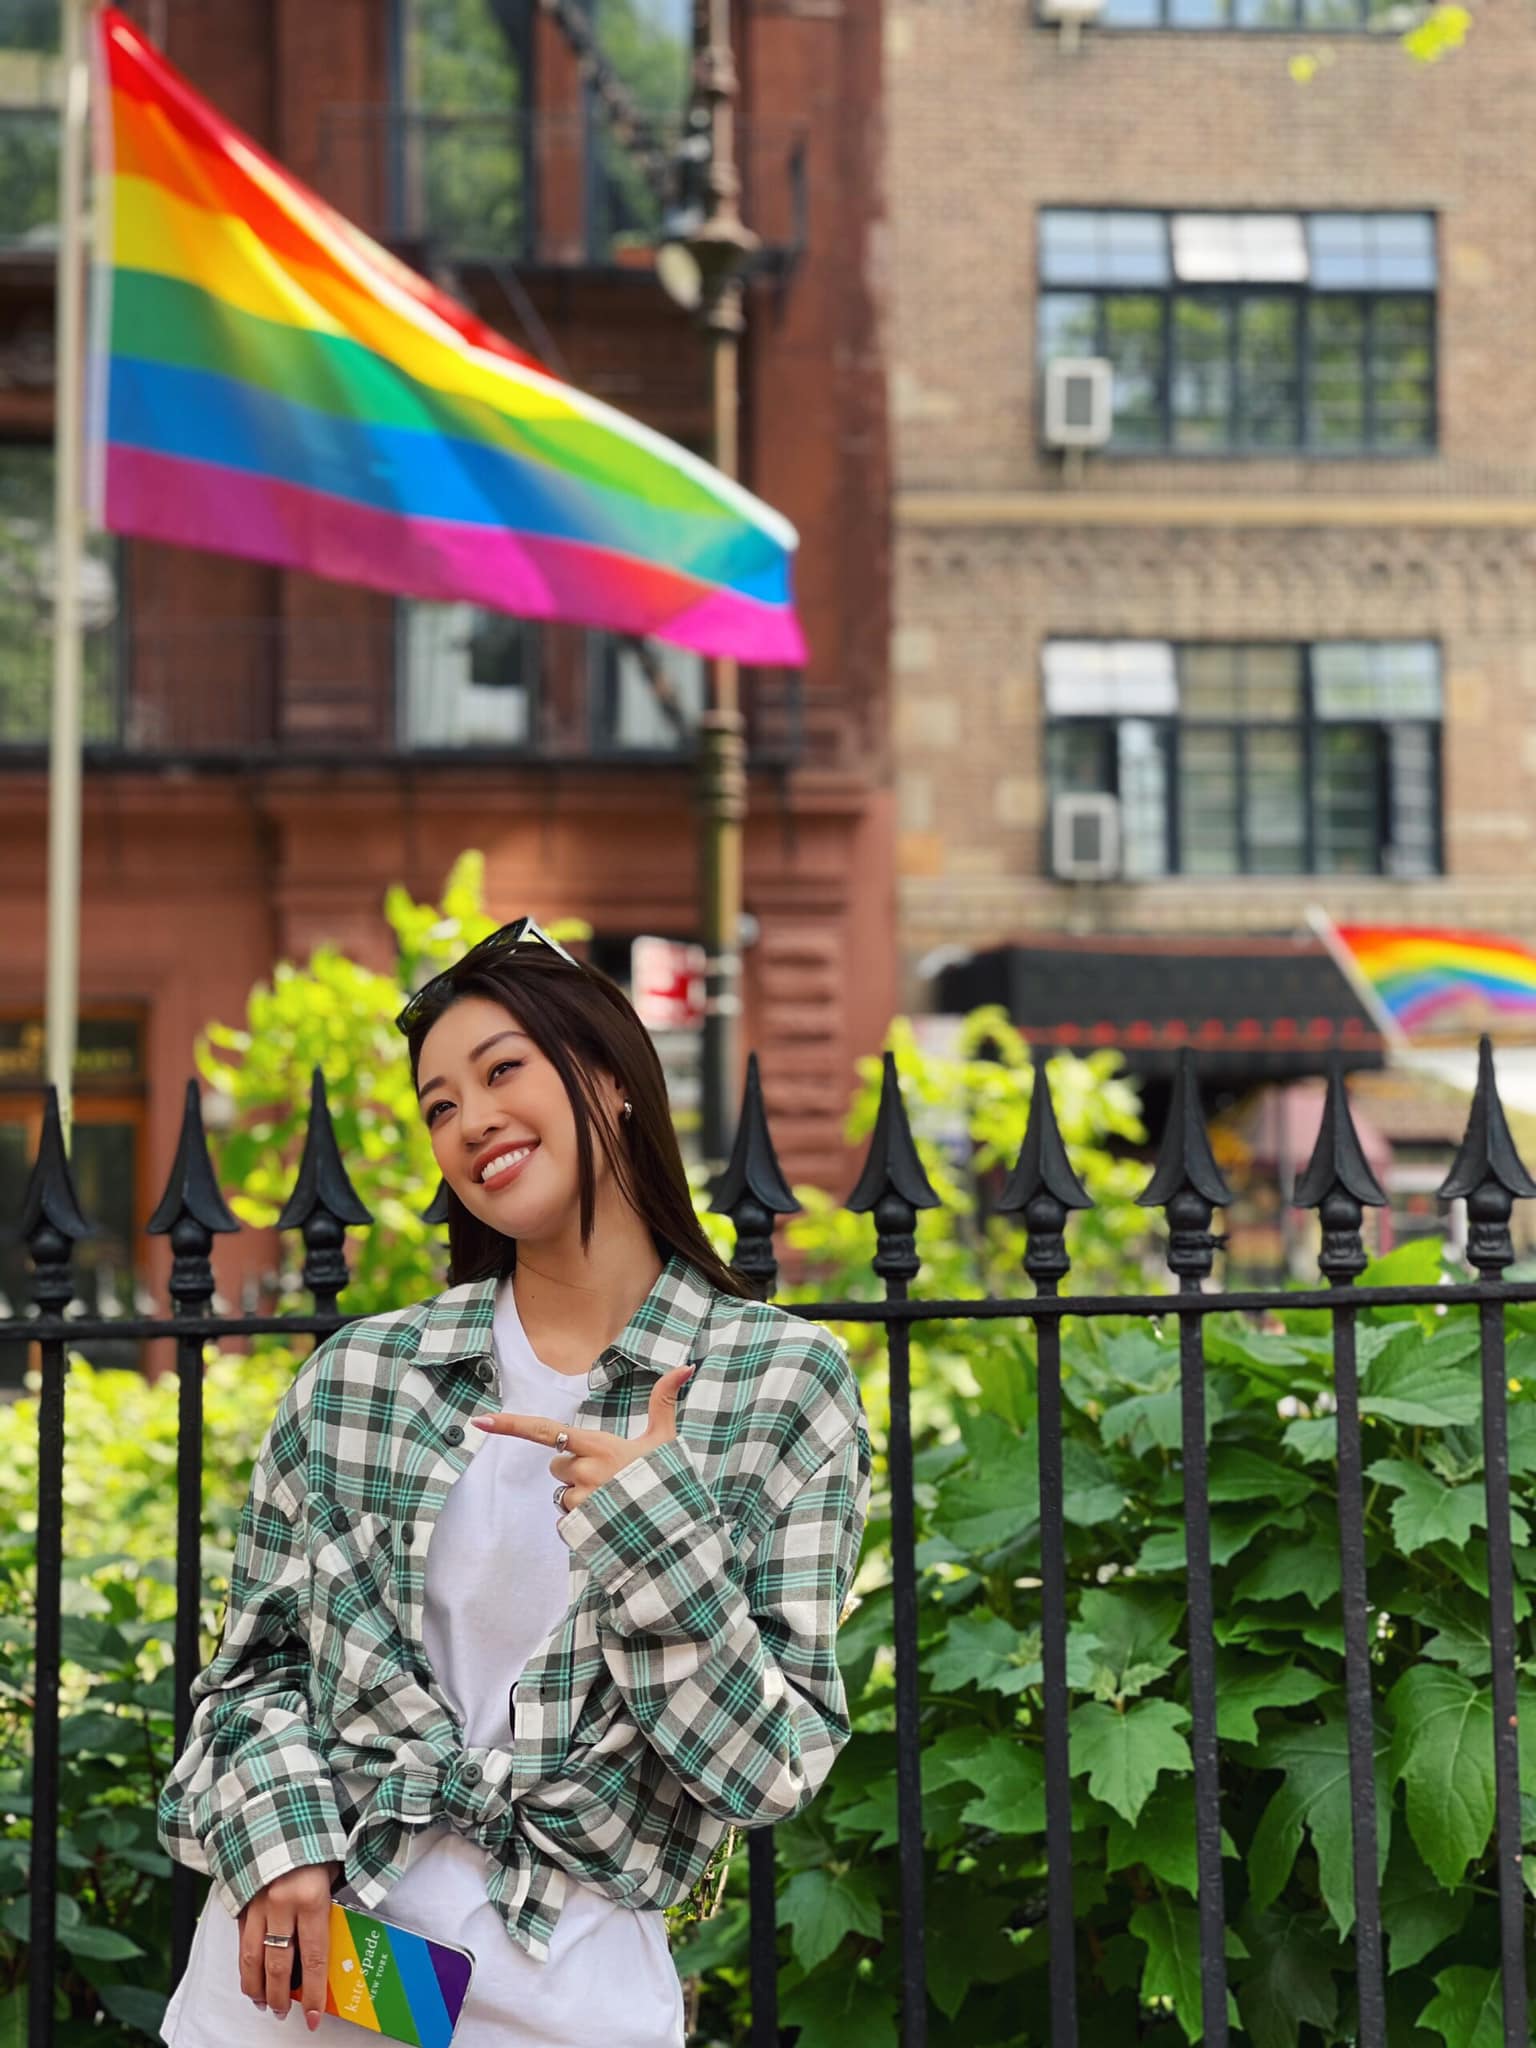 Hoa hậu Khánh Vân tươi tắn đi dạo tại Mỹ. Nàng hậu ngầm thể hiện sự ủng hộ dành cho cộng đồng LGBT với bức ảnh khoe ốp điện thoại và cờ lục sắc tung bay.